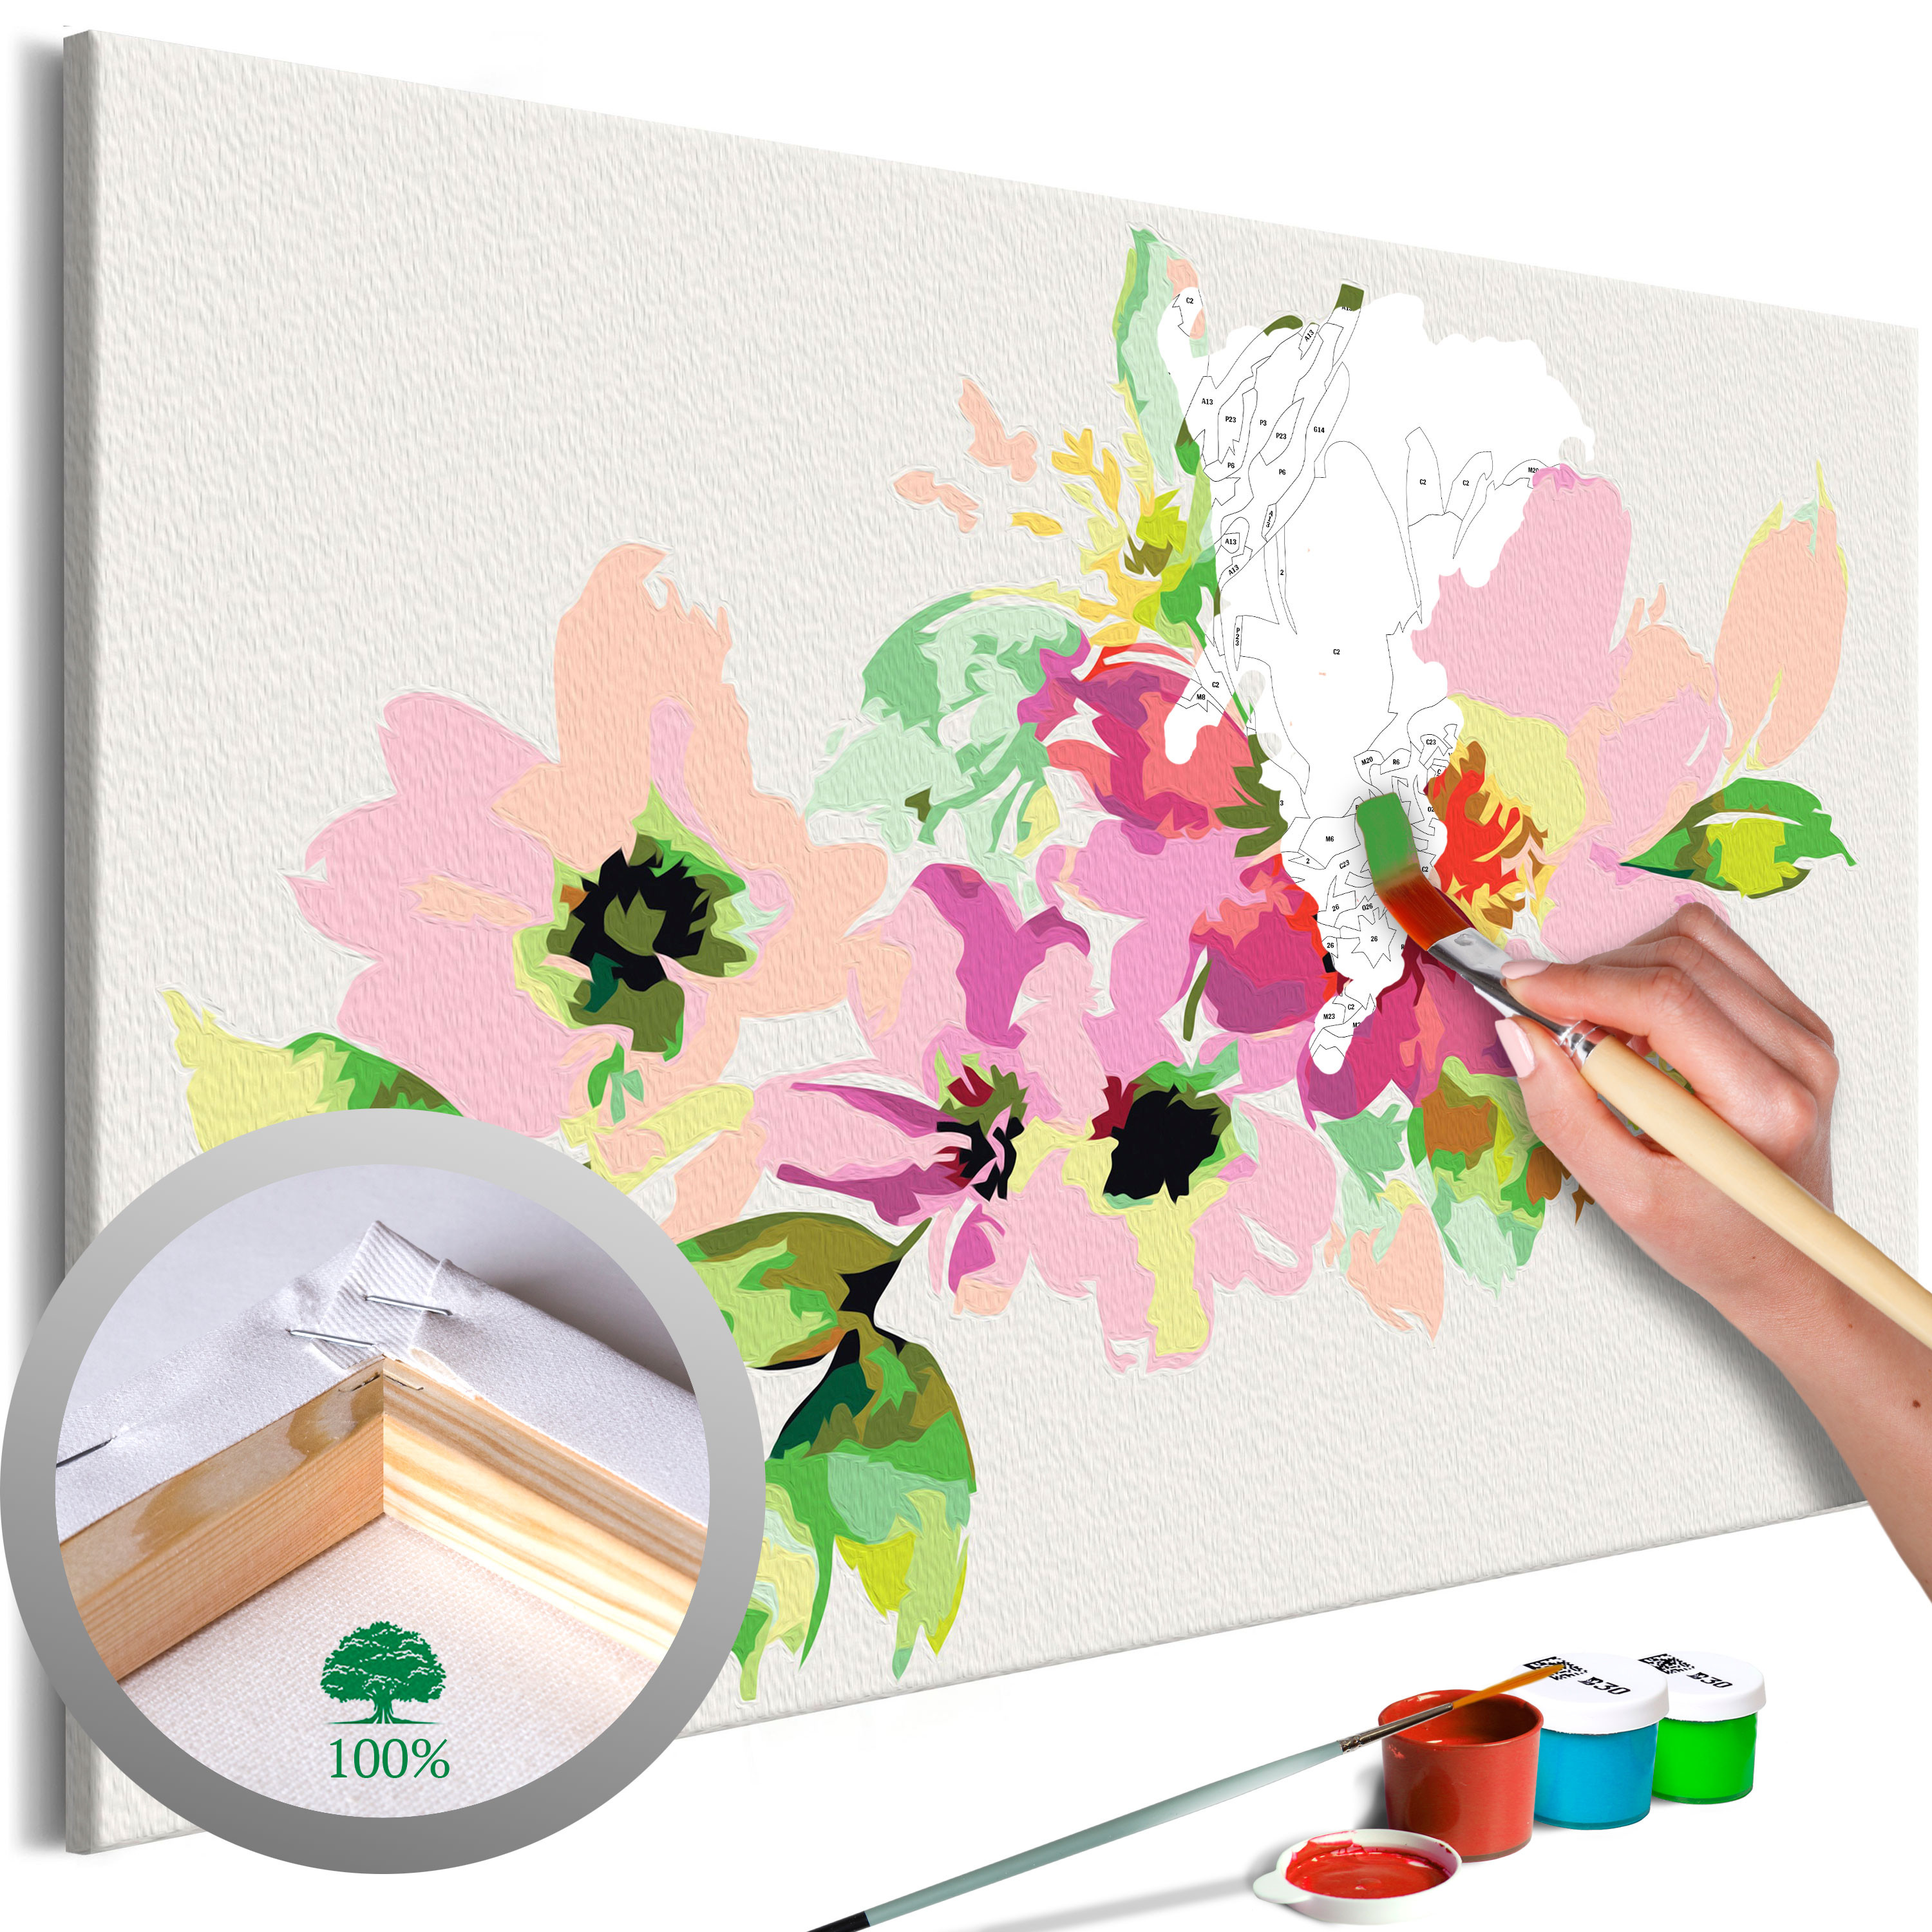 Quadri da dipingere Sunny Bouquet - Summer Composition of Colorful Flowers  - Set per dipingere con i numeri per gli adulti Bimago